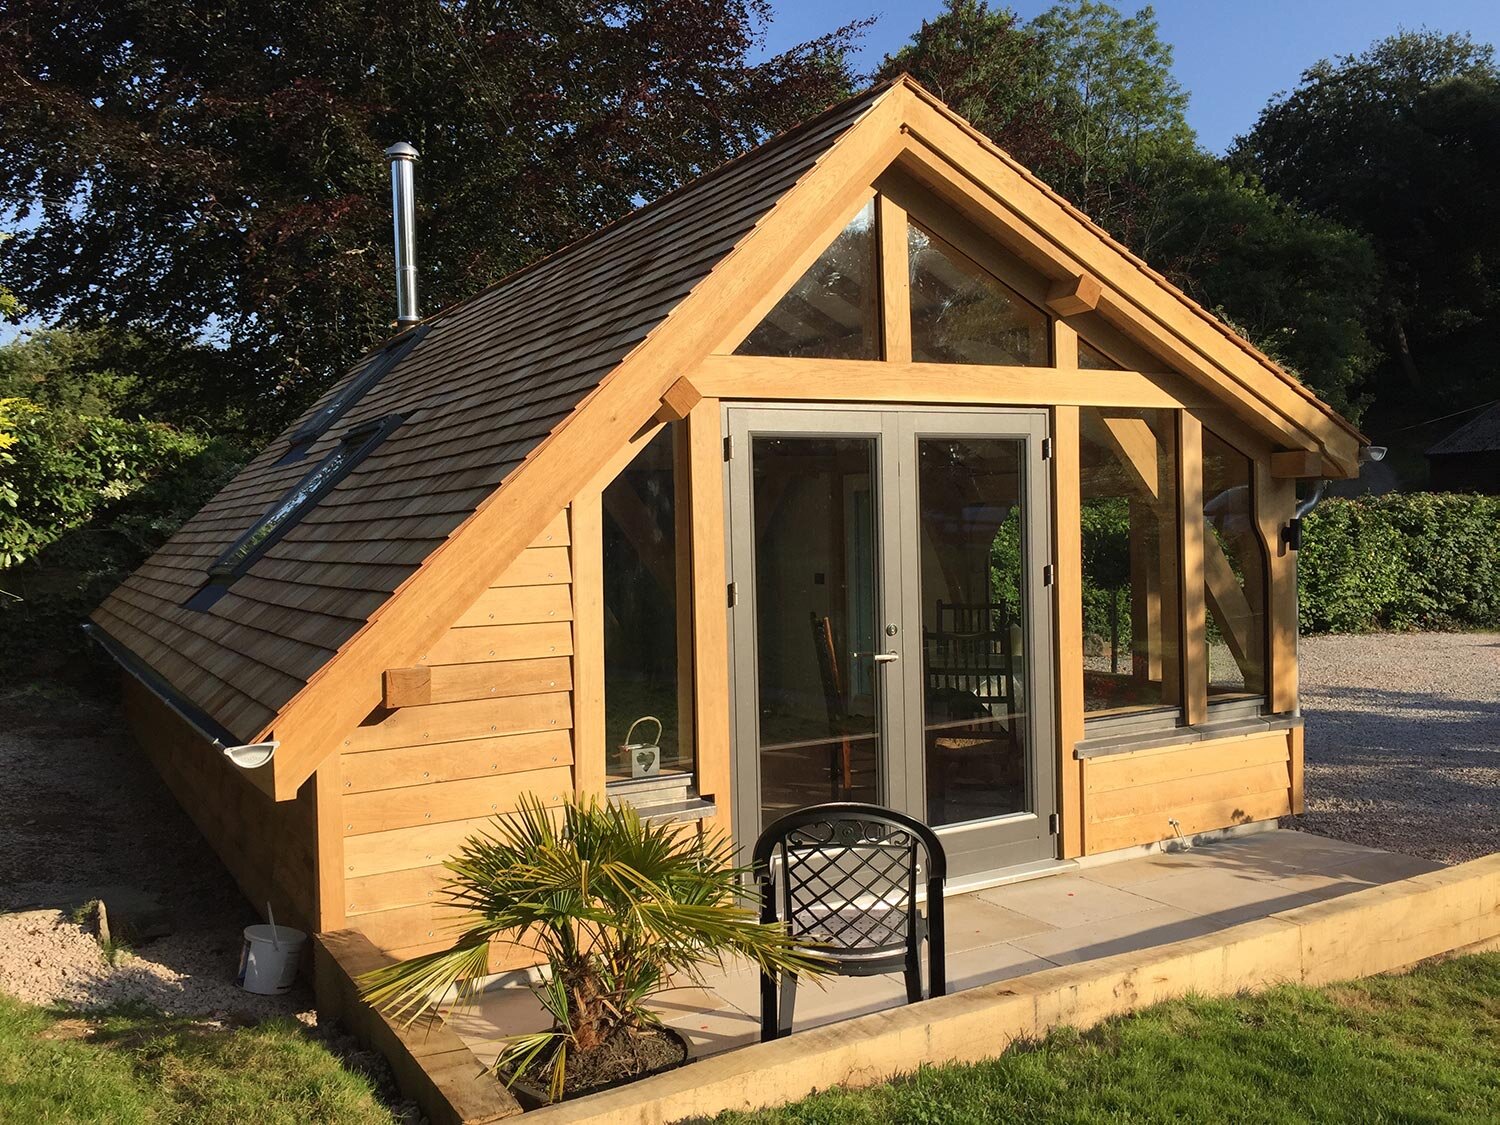 Oak framed HUTI cabin in Devon garden